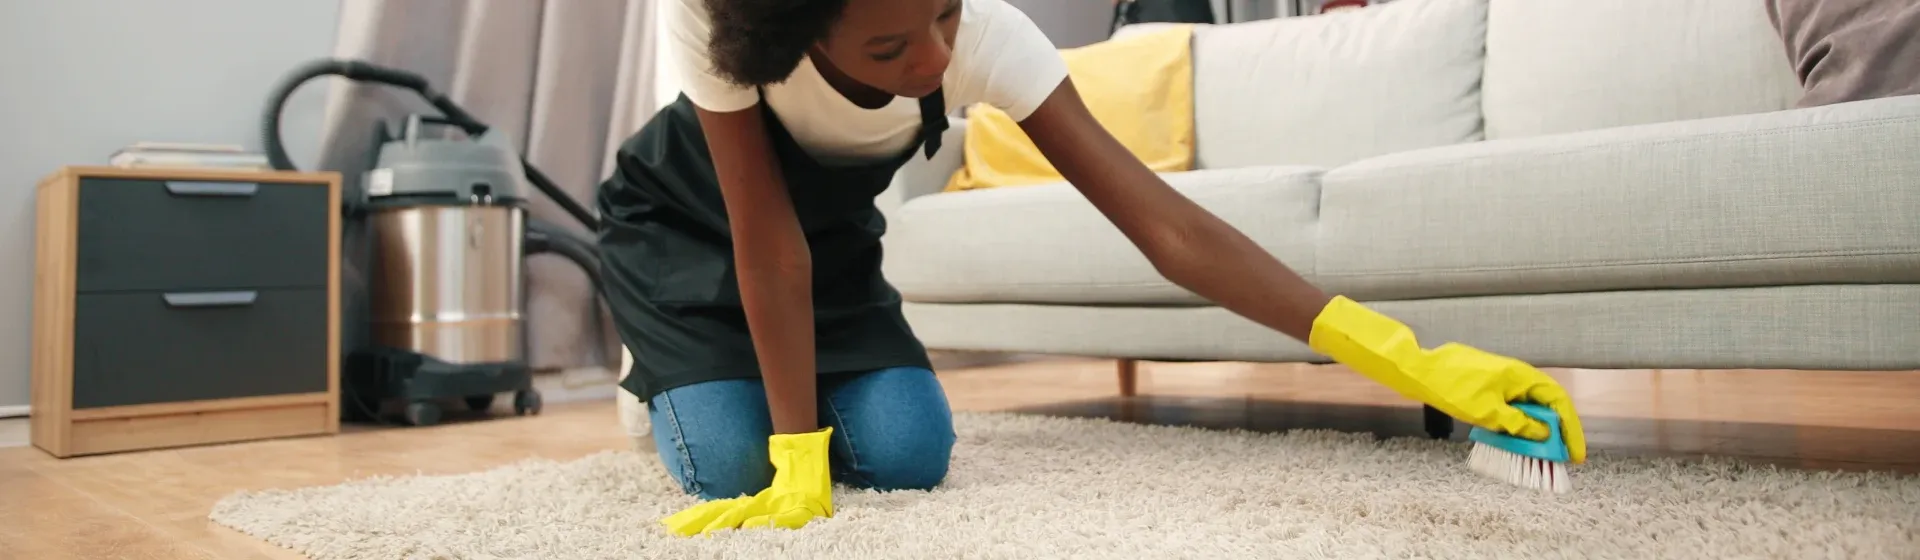 Como lavar tapete: confira o passo a passo